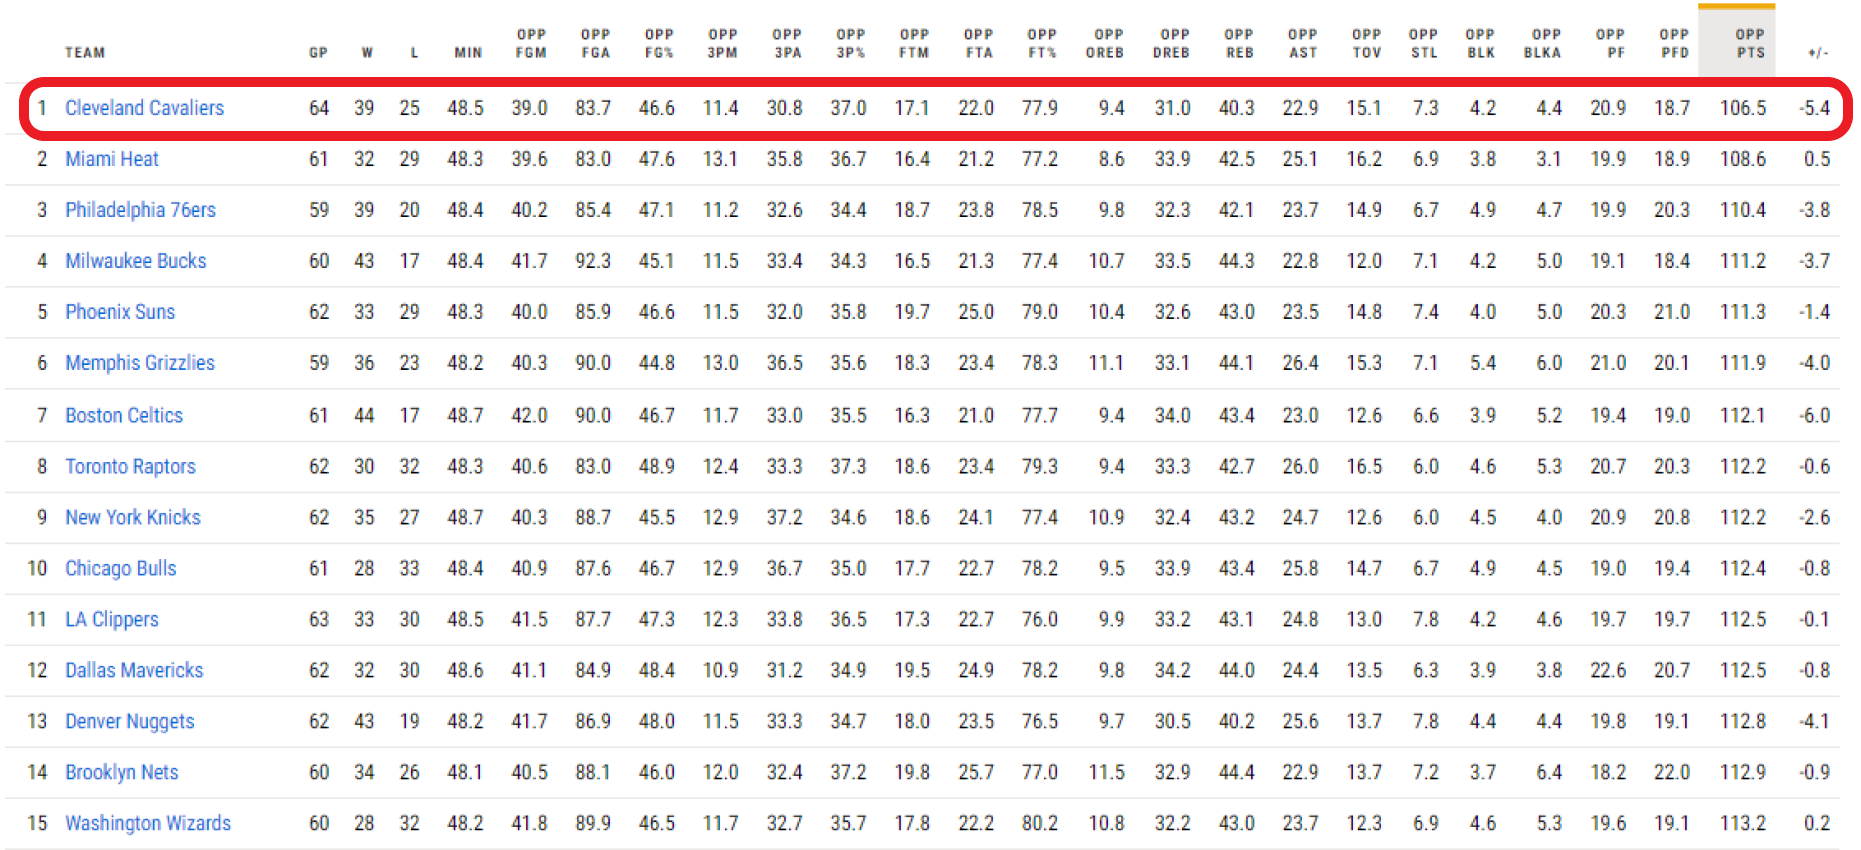 Los Cavs son la franquicia que menos puntos encaja de la NBA. / Fuente: NBA.com